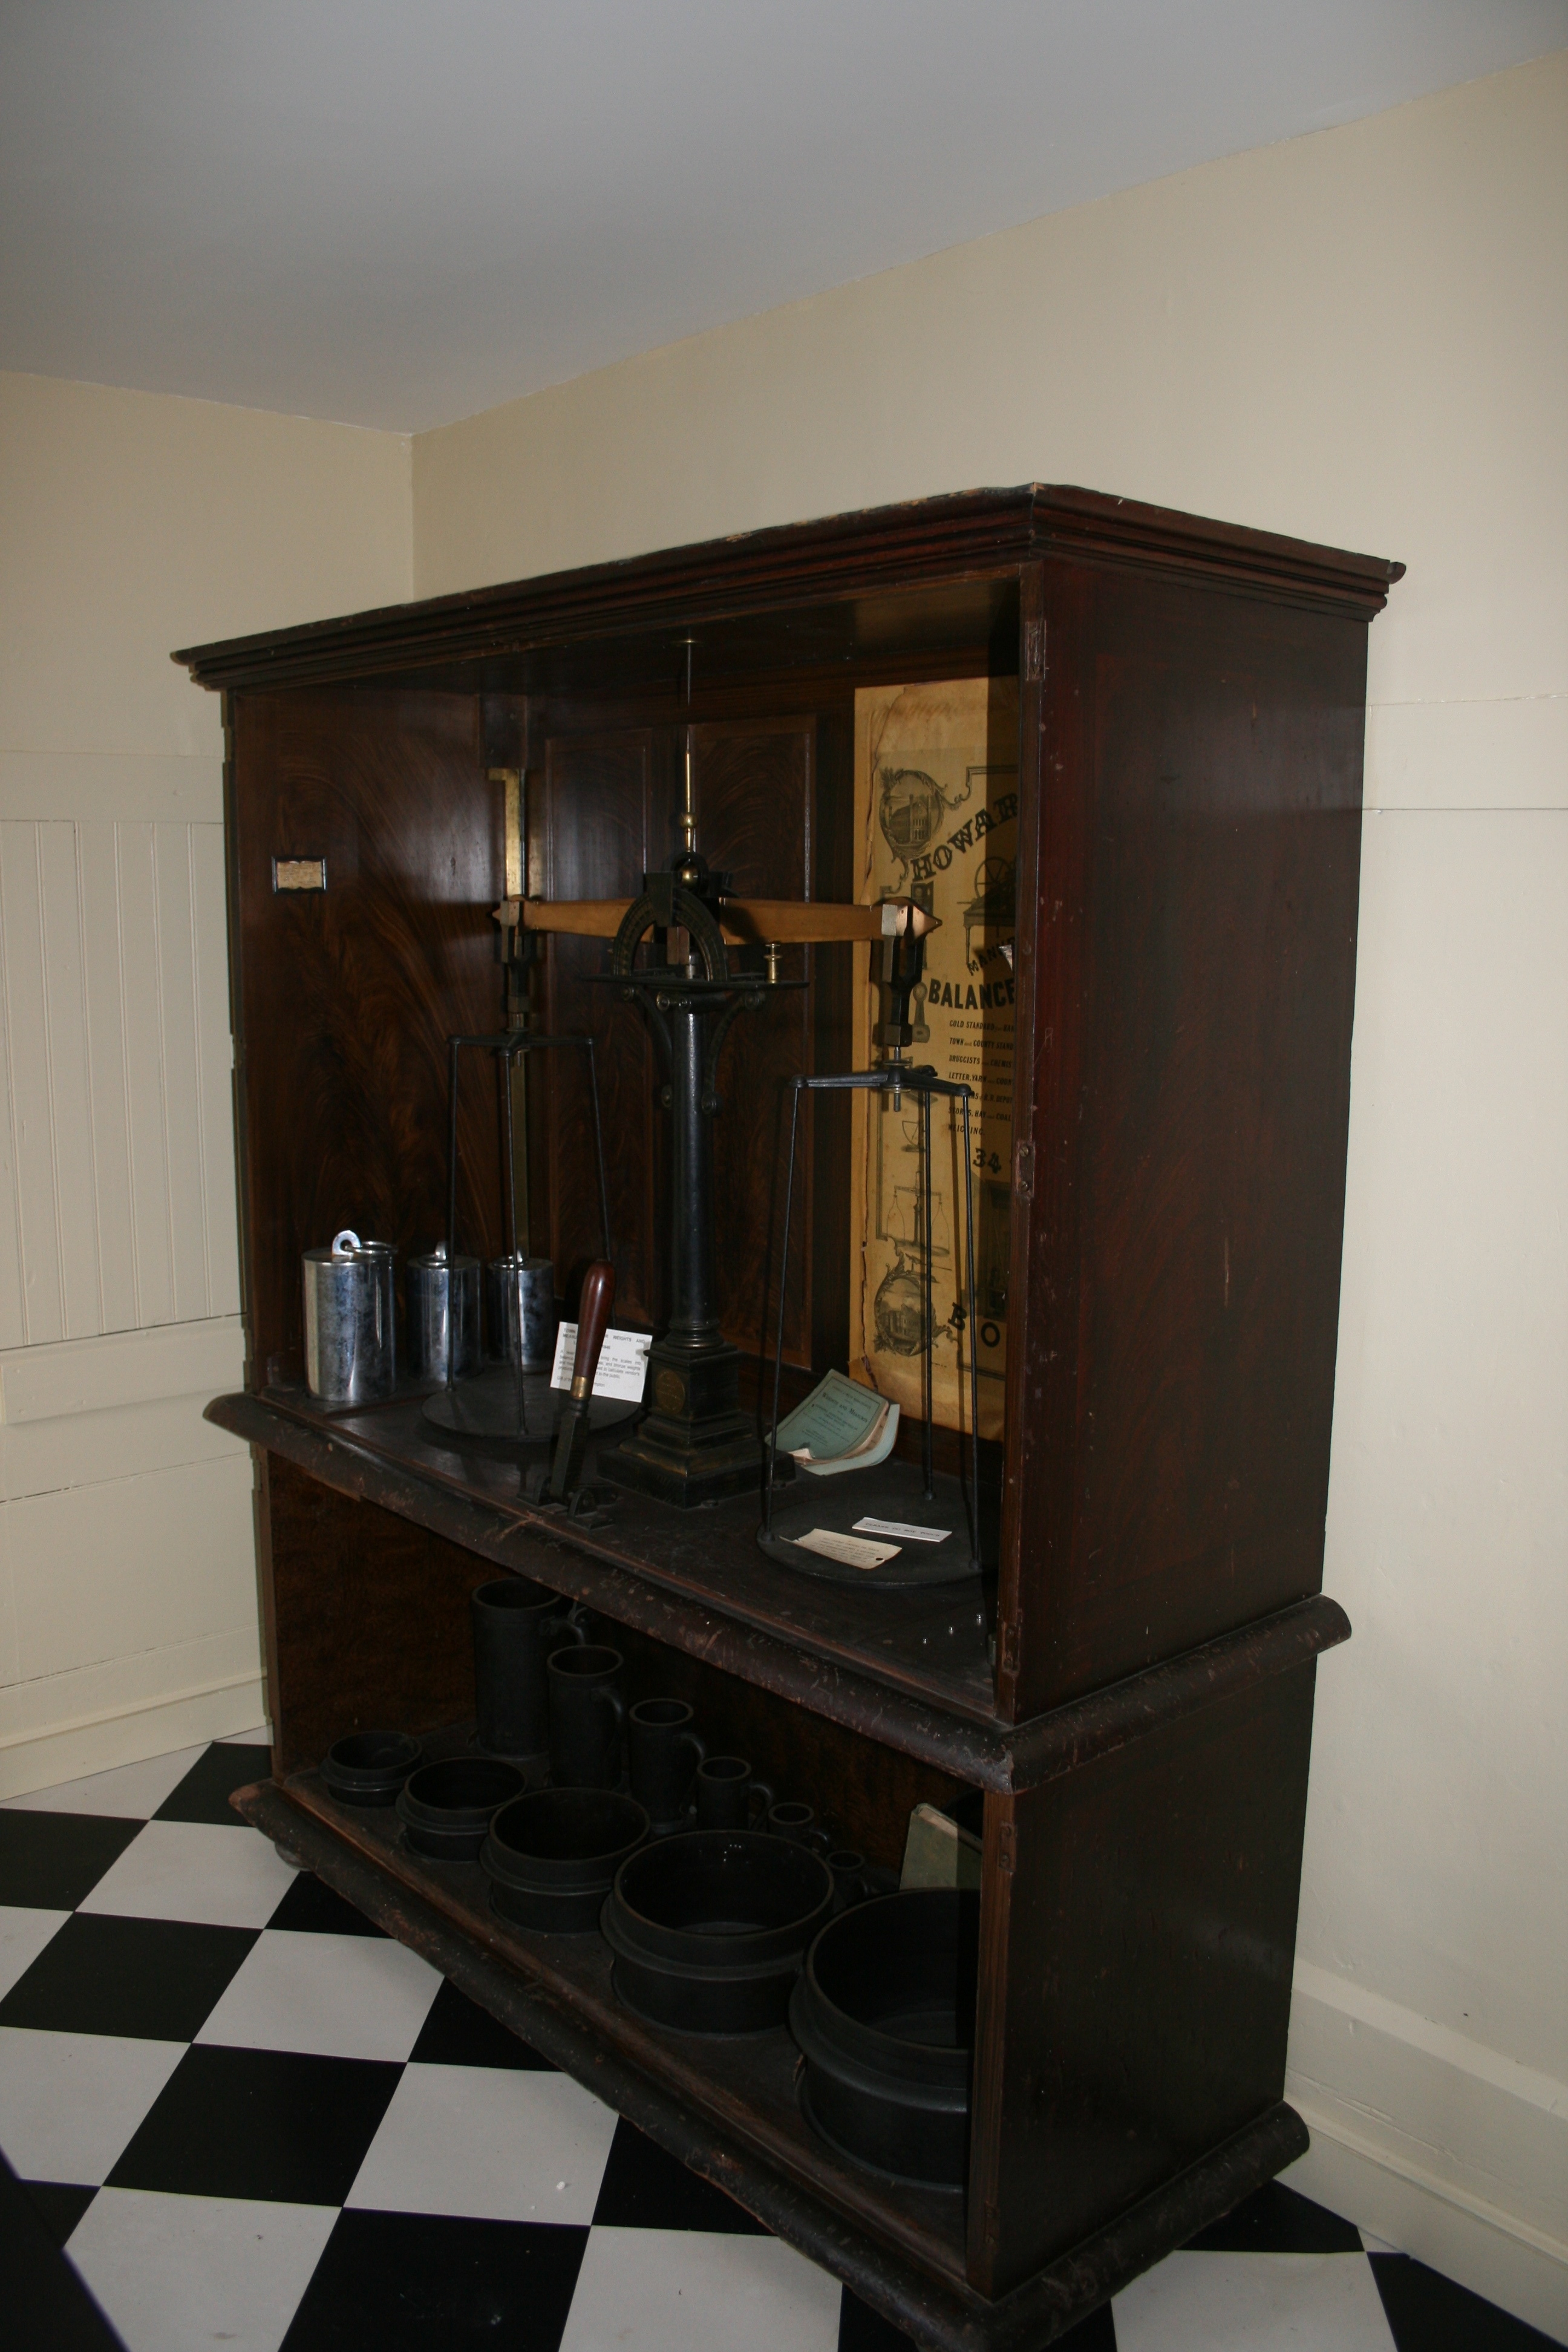 Display at the Plympton Historical Society